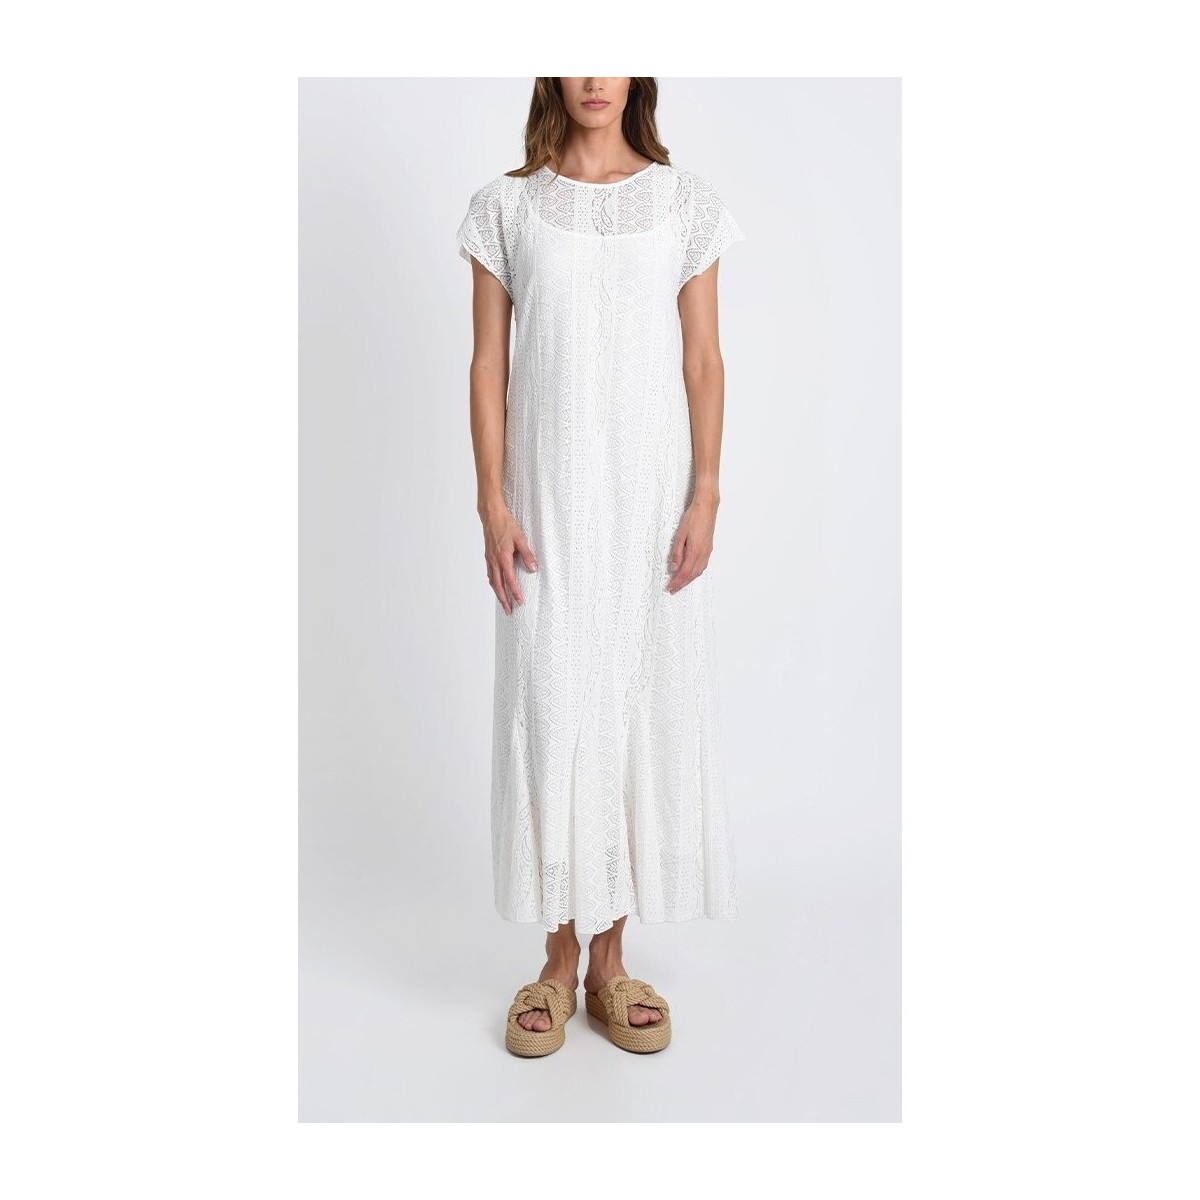 Vêtements Femme Fleur De Safran - Robe longue - blanche Blanc